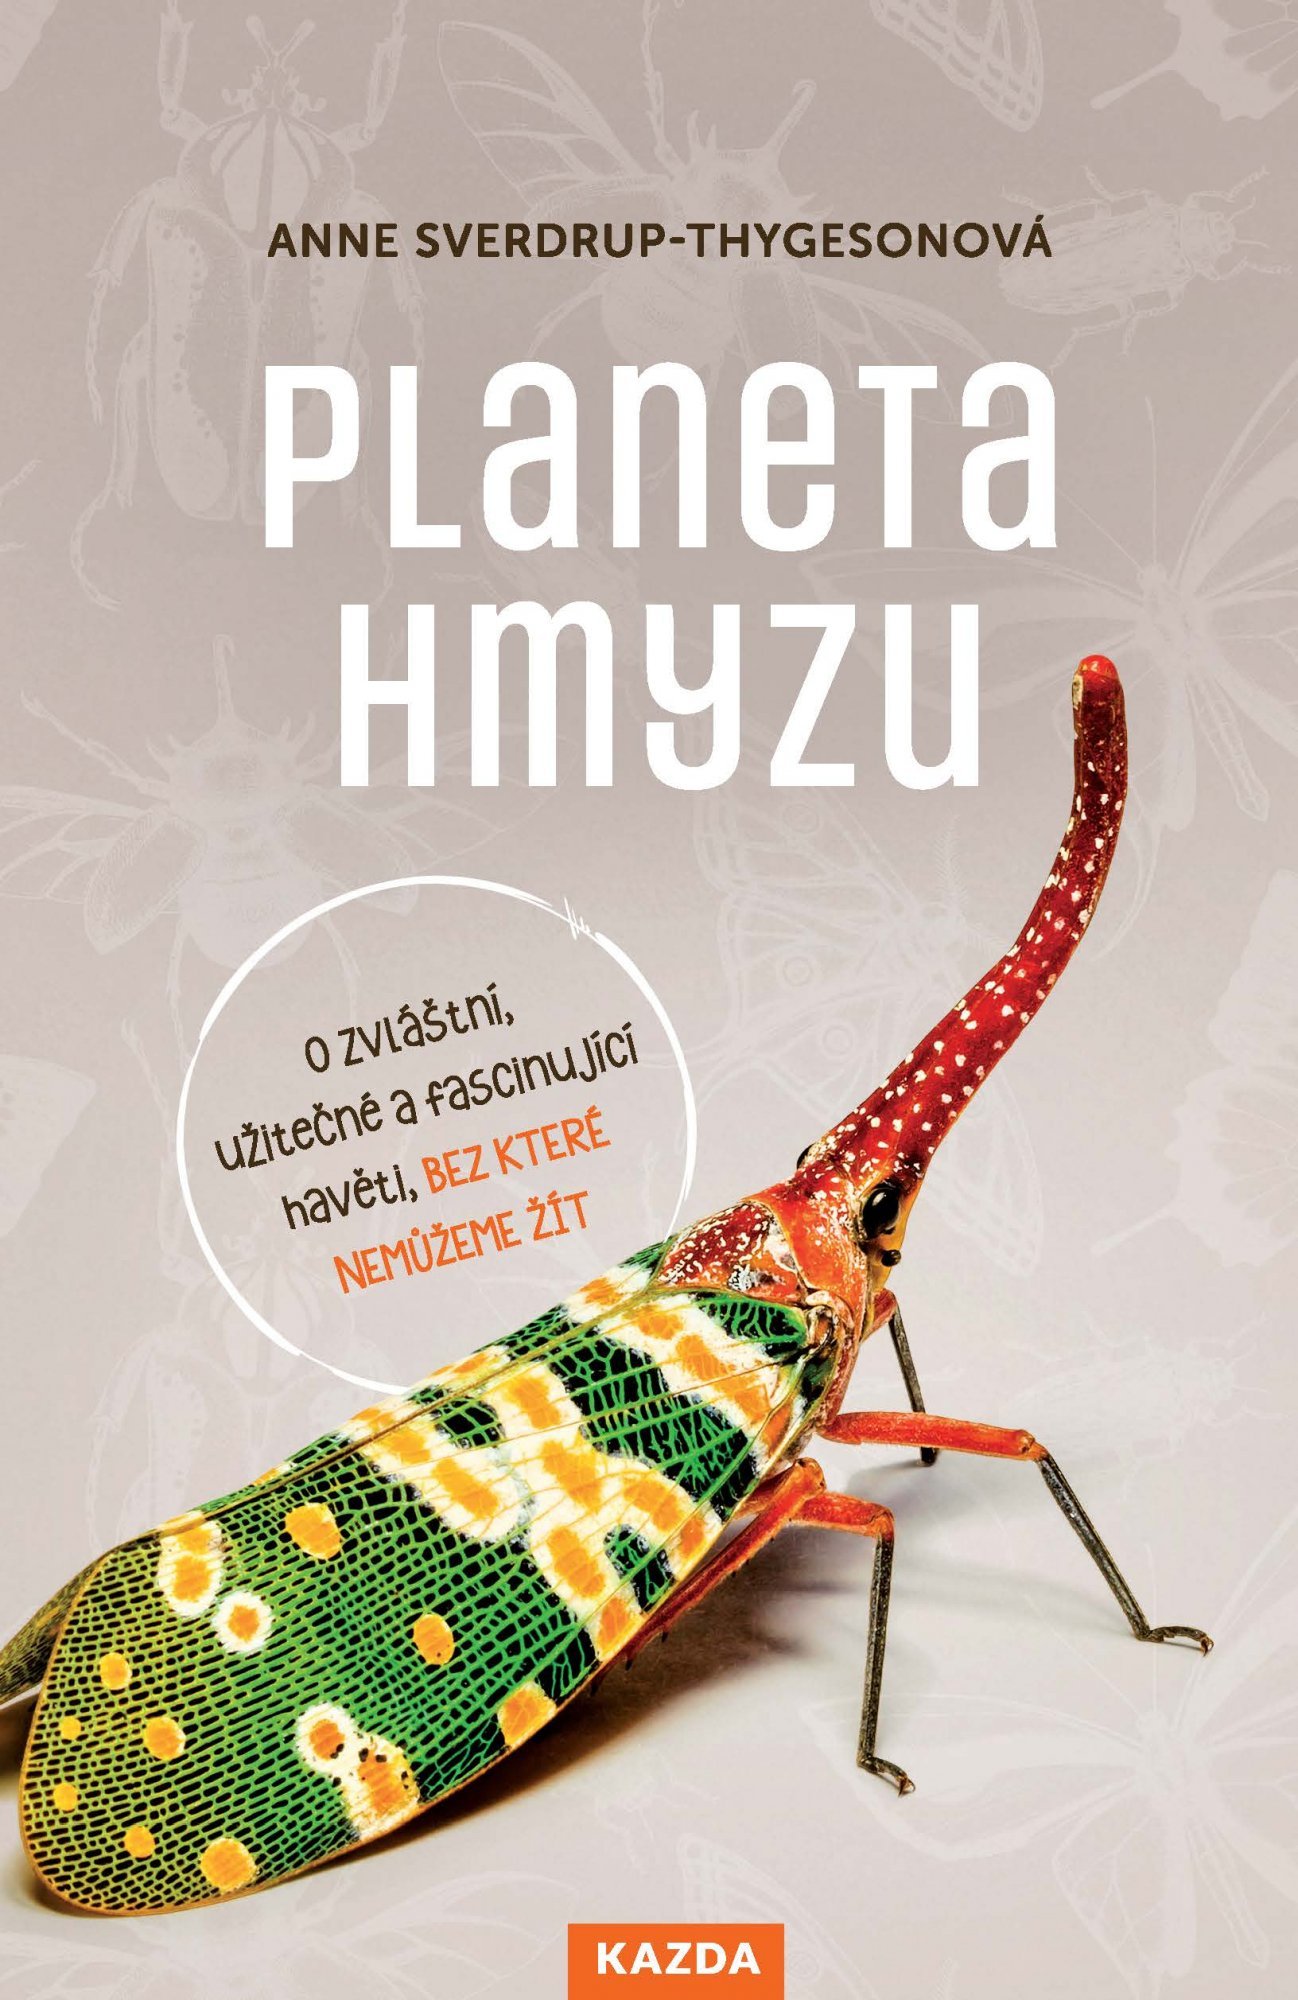 Levně Planeta hmyzu - O zvláštní, užitečné a fascinující havěti, bez které nemůžeme žít - Anne Sverdrup-Thygesonová